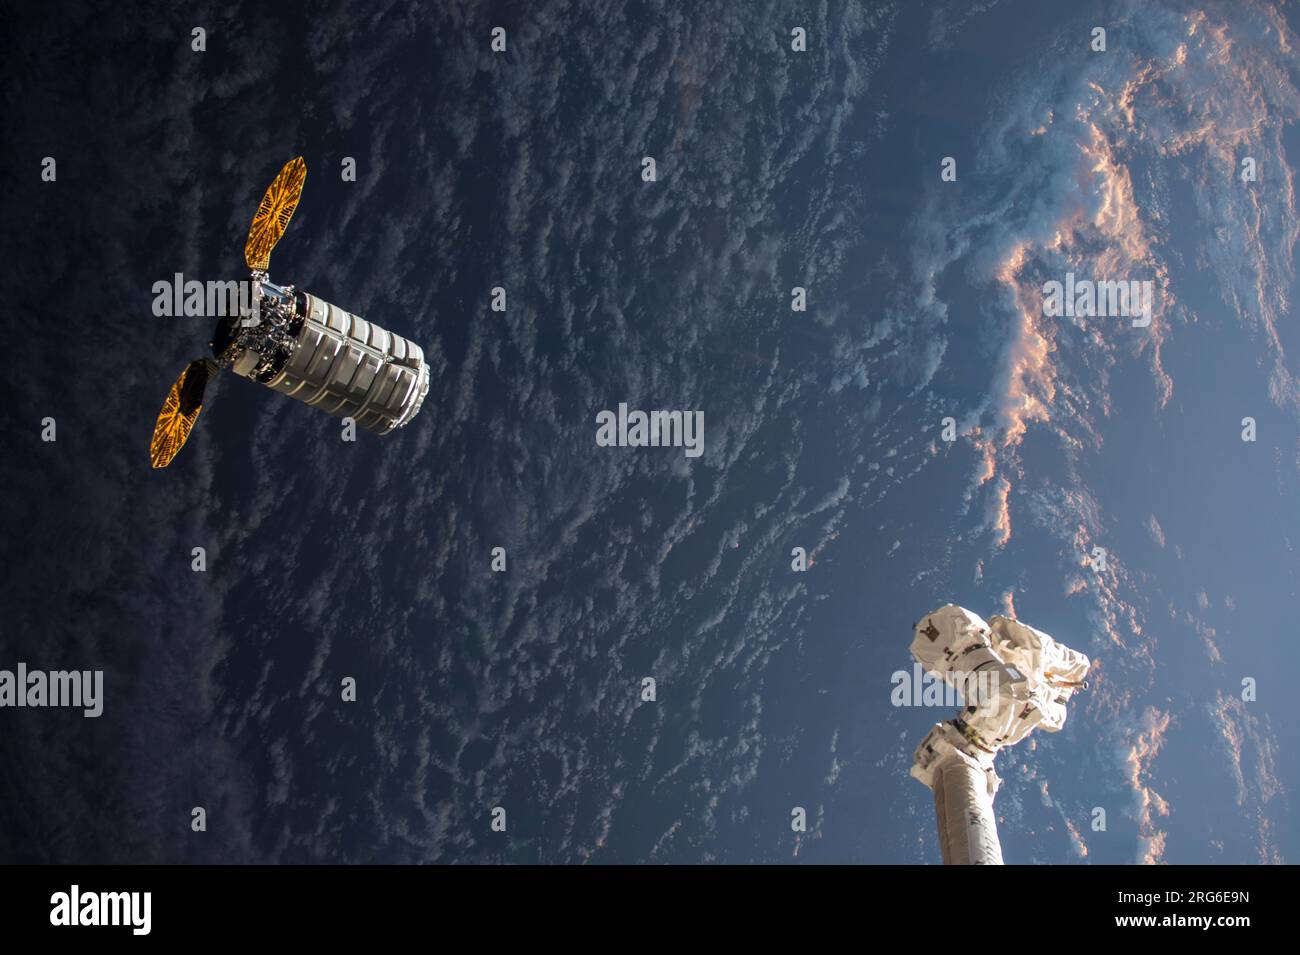 Il veicolo spaziale Cygnus si avvicina al braccio robotico Canadarm2 mentre vola verso un'alba orbitale. Foto Stock